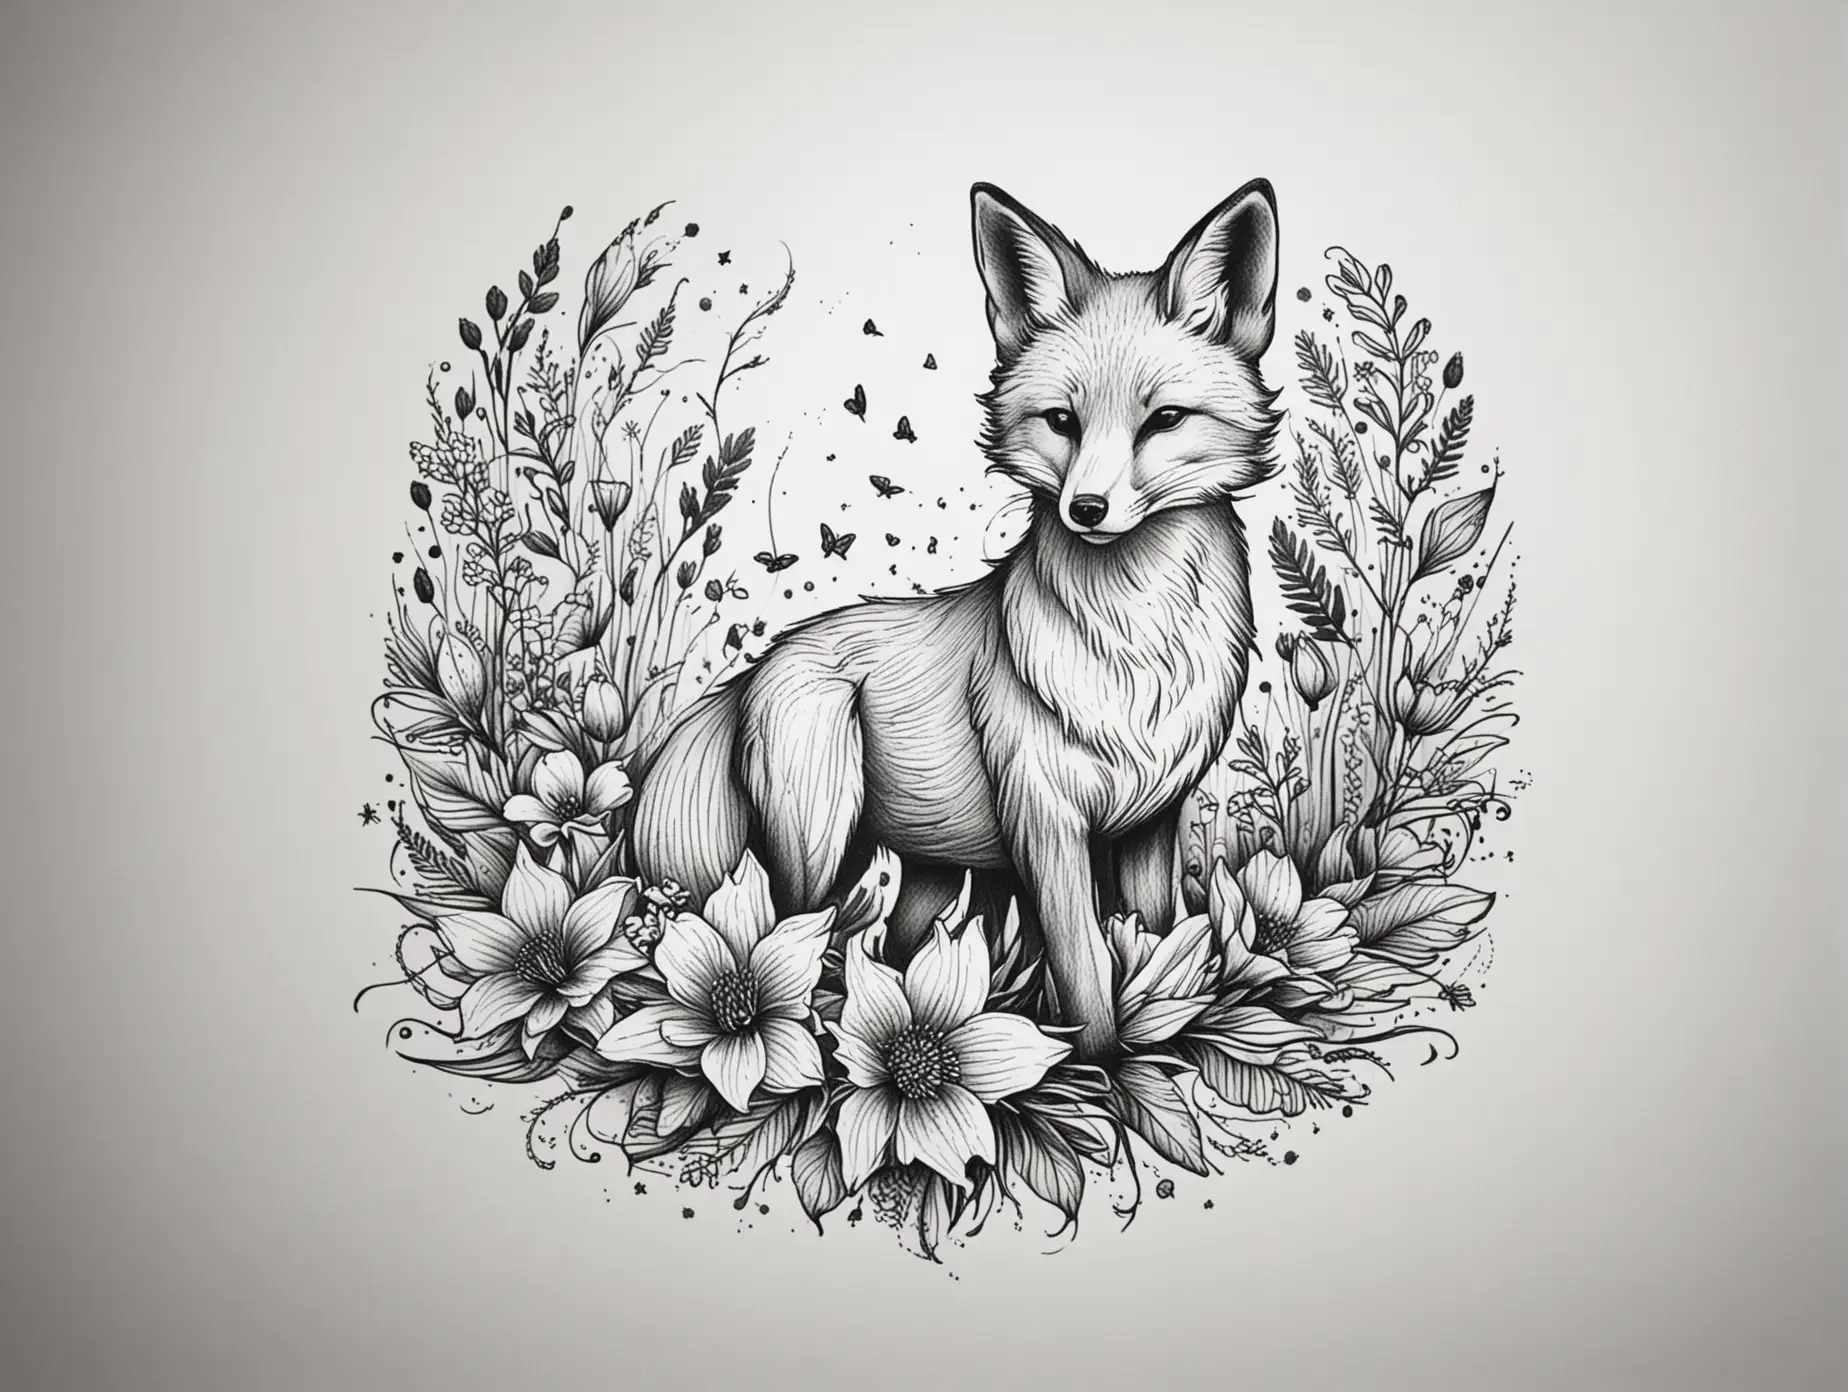 Erstelle ein einfaches, aber kunstvolles Schwarz-Weiß-Tattoo-Design in Linework-Stil. Das Design soll einen Fuchs zeigen, der in einem Blumenfeld spielt. Bitte halte das Design minimalistisch mit klaren Linien und wenig Details, um es als Tattoo-Vorlage zu verwenden.